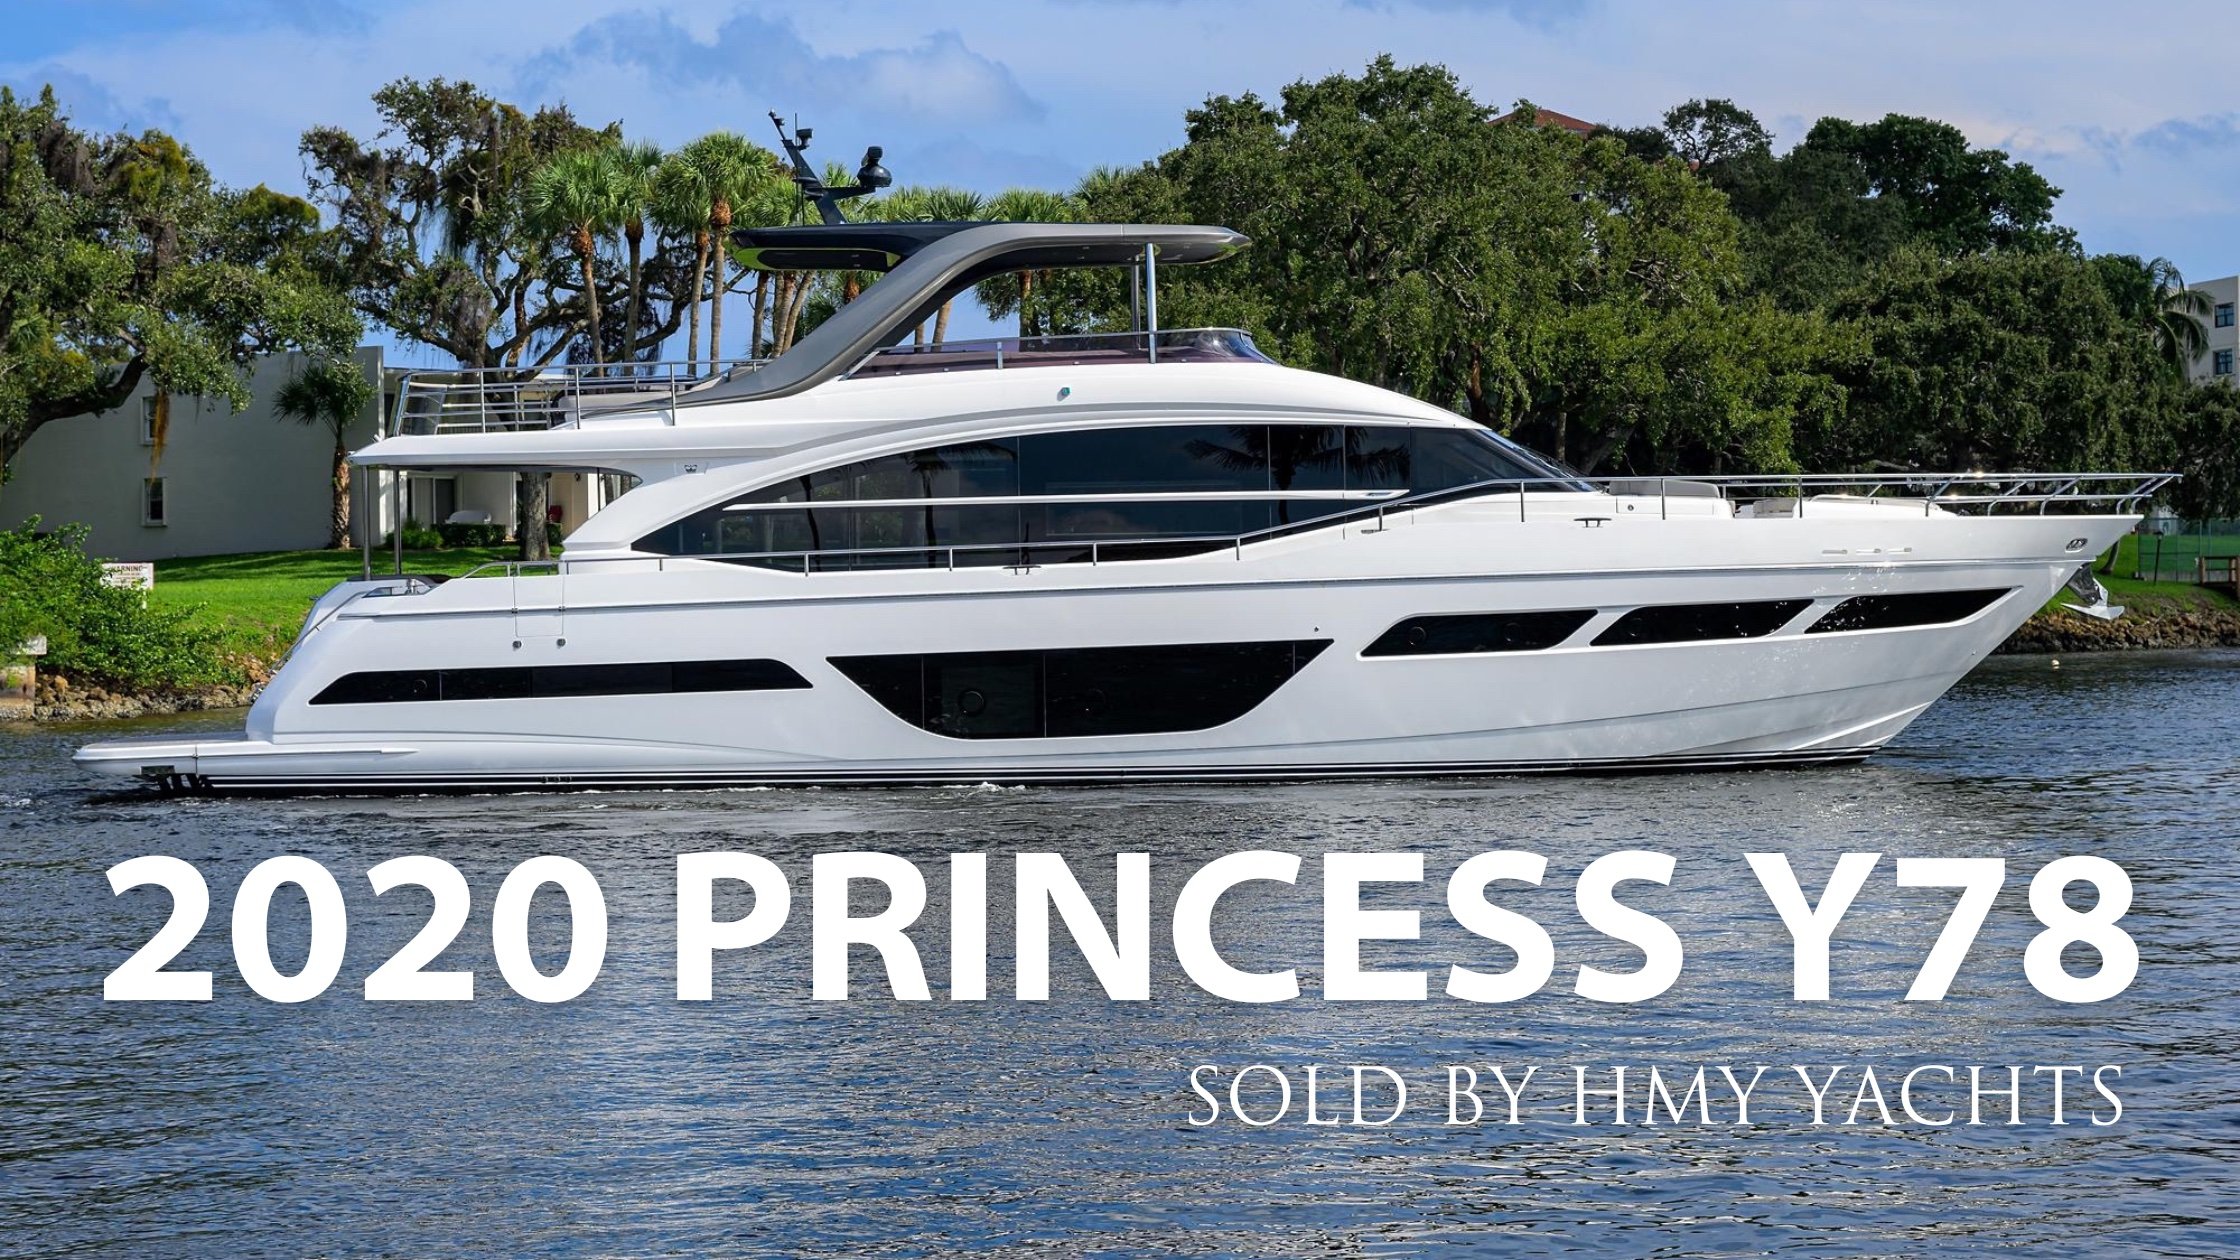 2020 Princess Y78 “Tar Heel” Sold by HMY’s Mike McCarthy